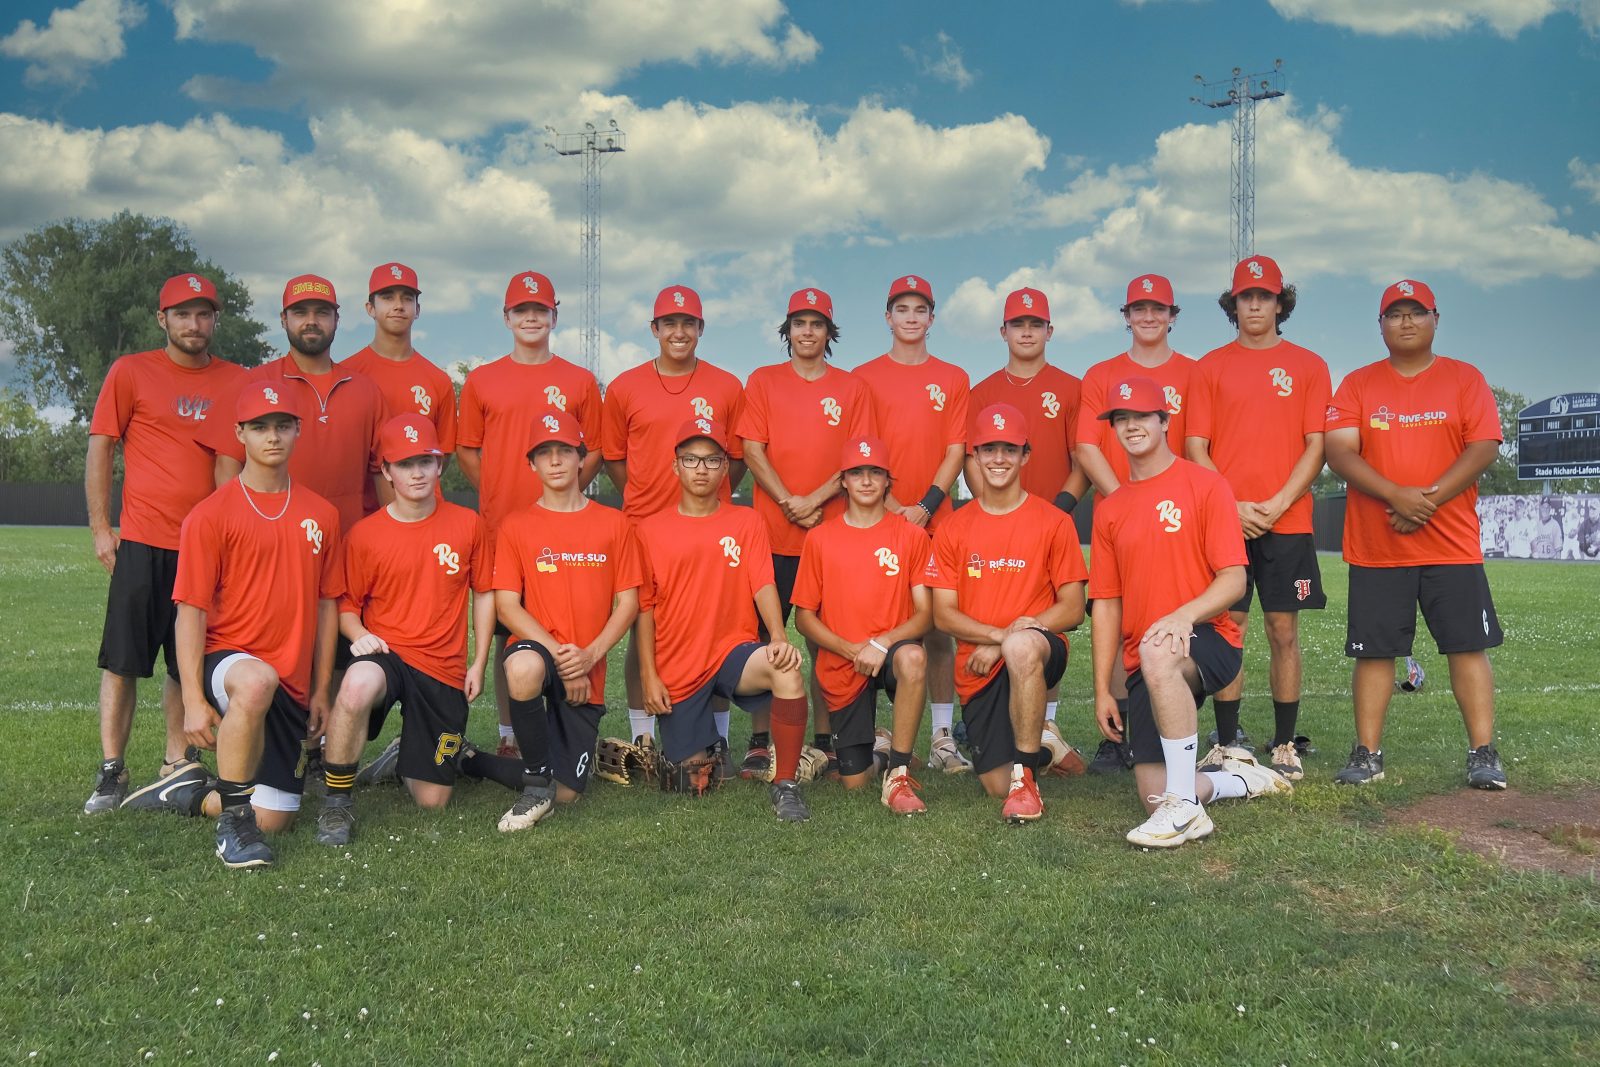 Six joueurs et deux entraineurs de la région dans l’équipe de baseball Rive-Sud